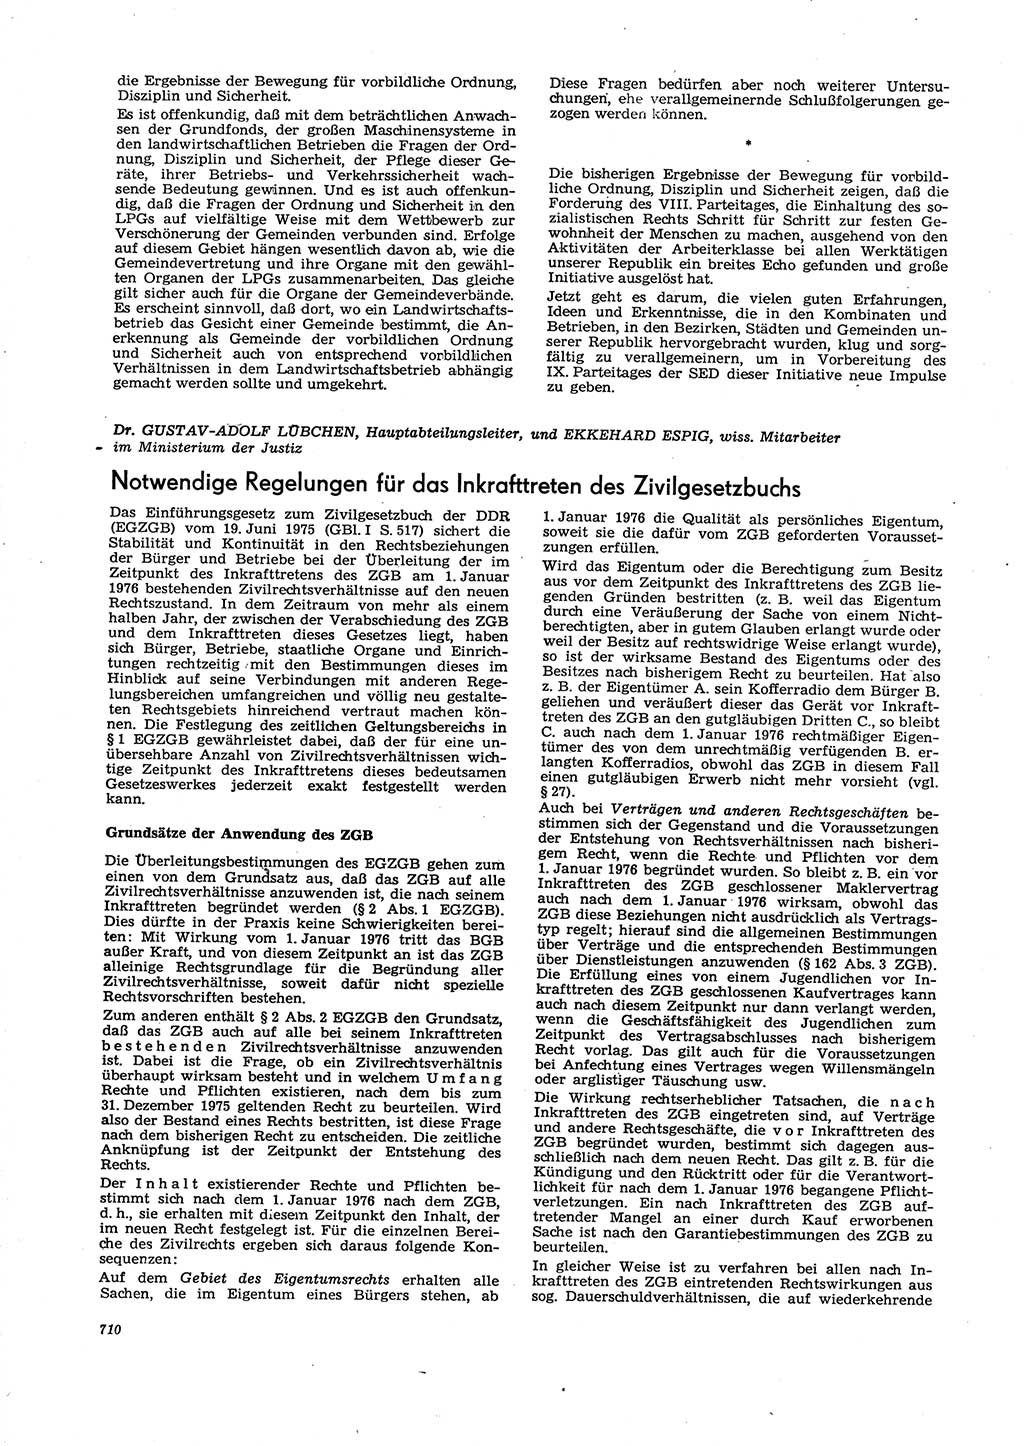 Neue Justiz (NJ), Zeitschrift für Recht und Rechtswissenschaft [Deutsche Demokratische Republik (DDR)], 29. Jahrgang 1975, Seite 710 (NJ DDR 1975, S. 710)